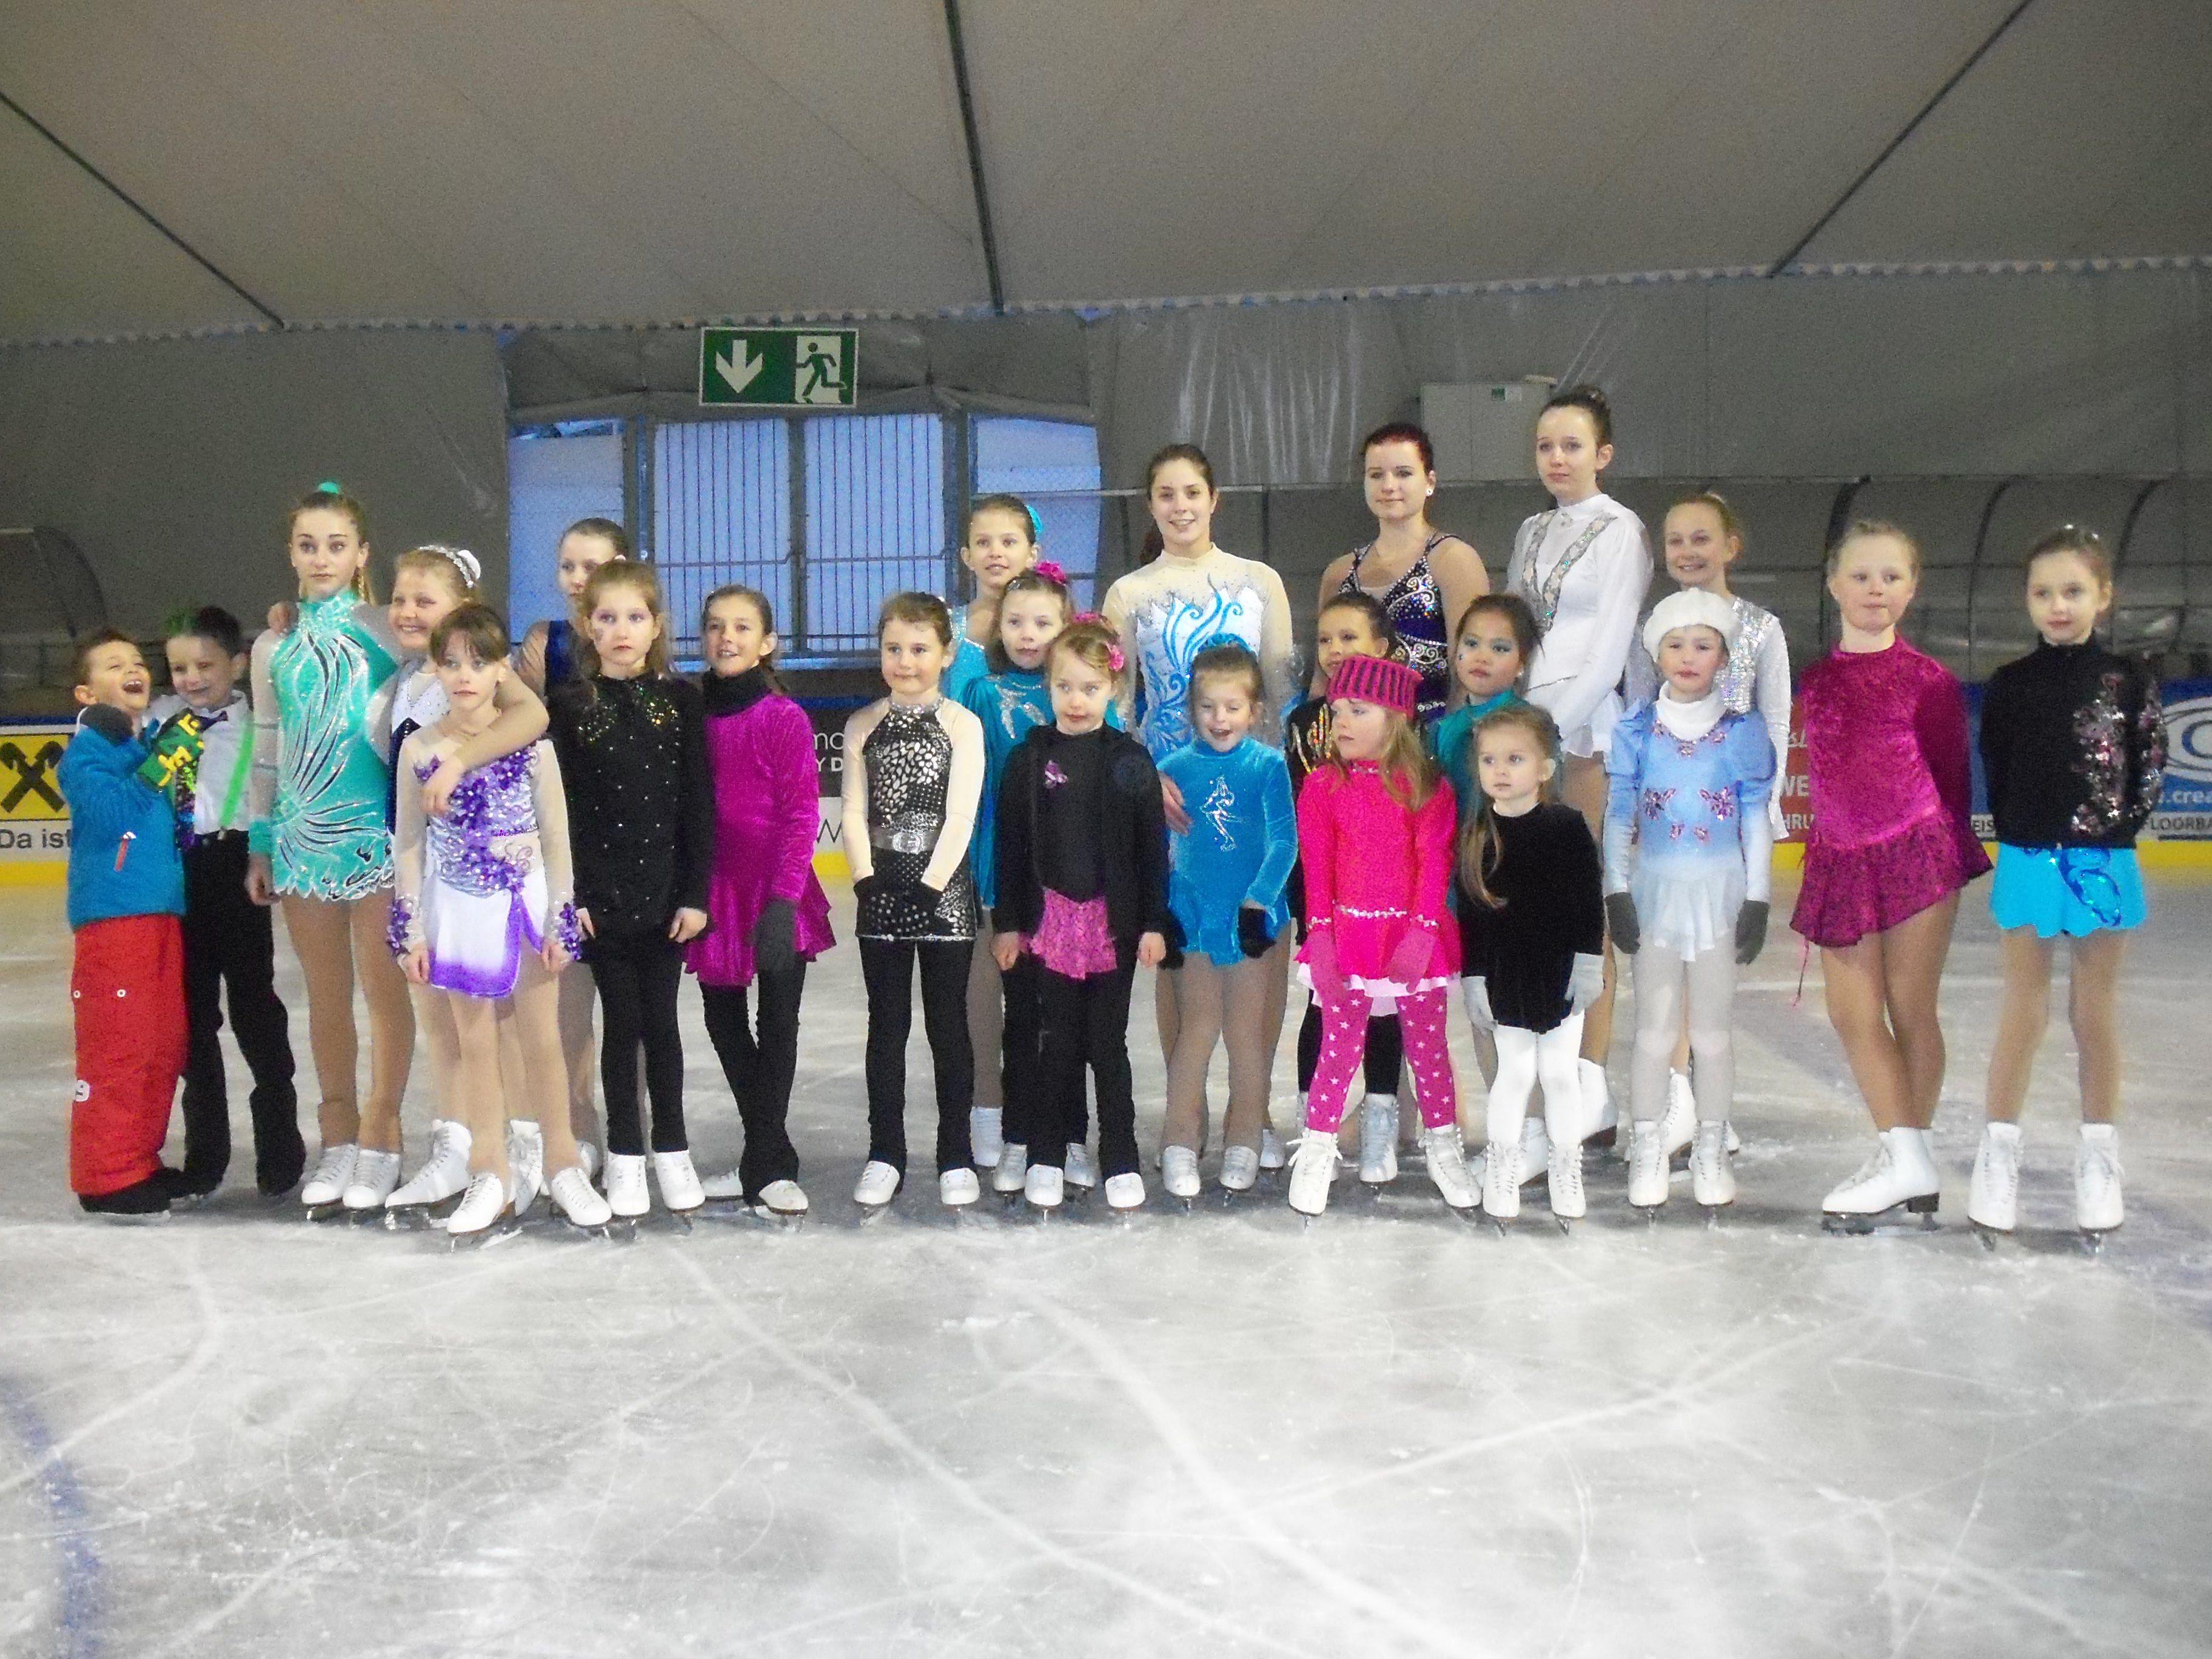 Die Teilnehmerinnen und Teilnehmer an der Vereinsmeisterschaft des Eislaufverein Montafon